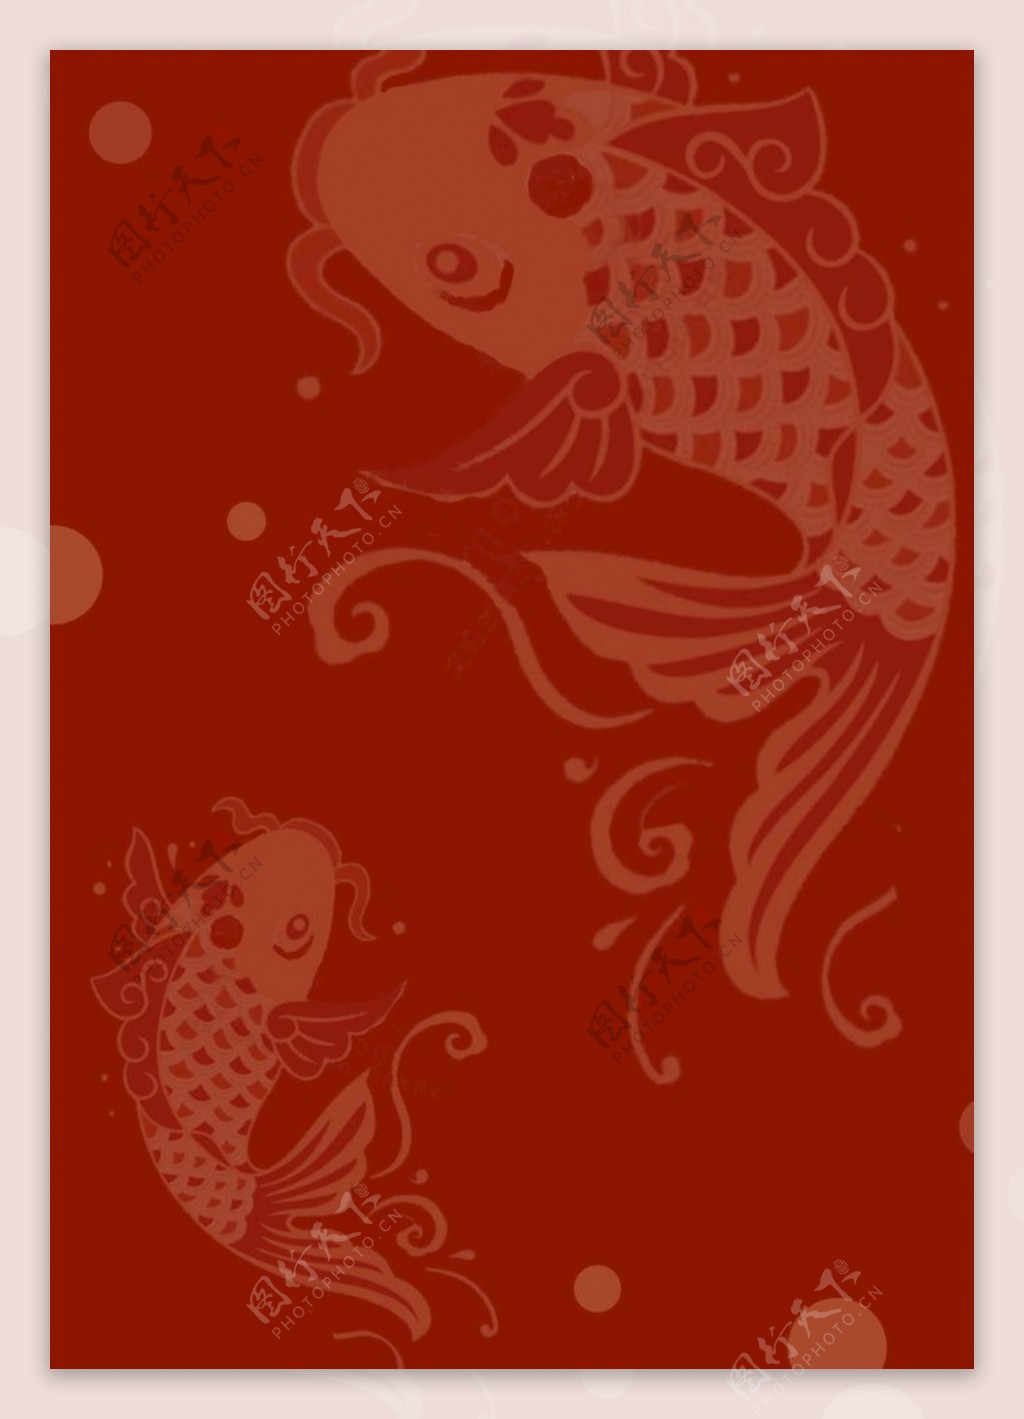 红色鲤鱼背景图片